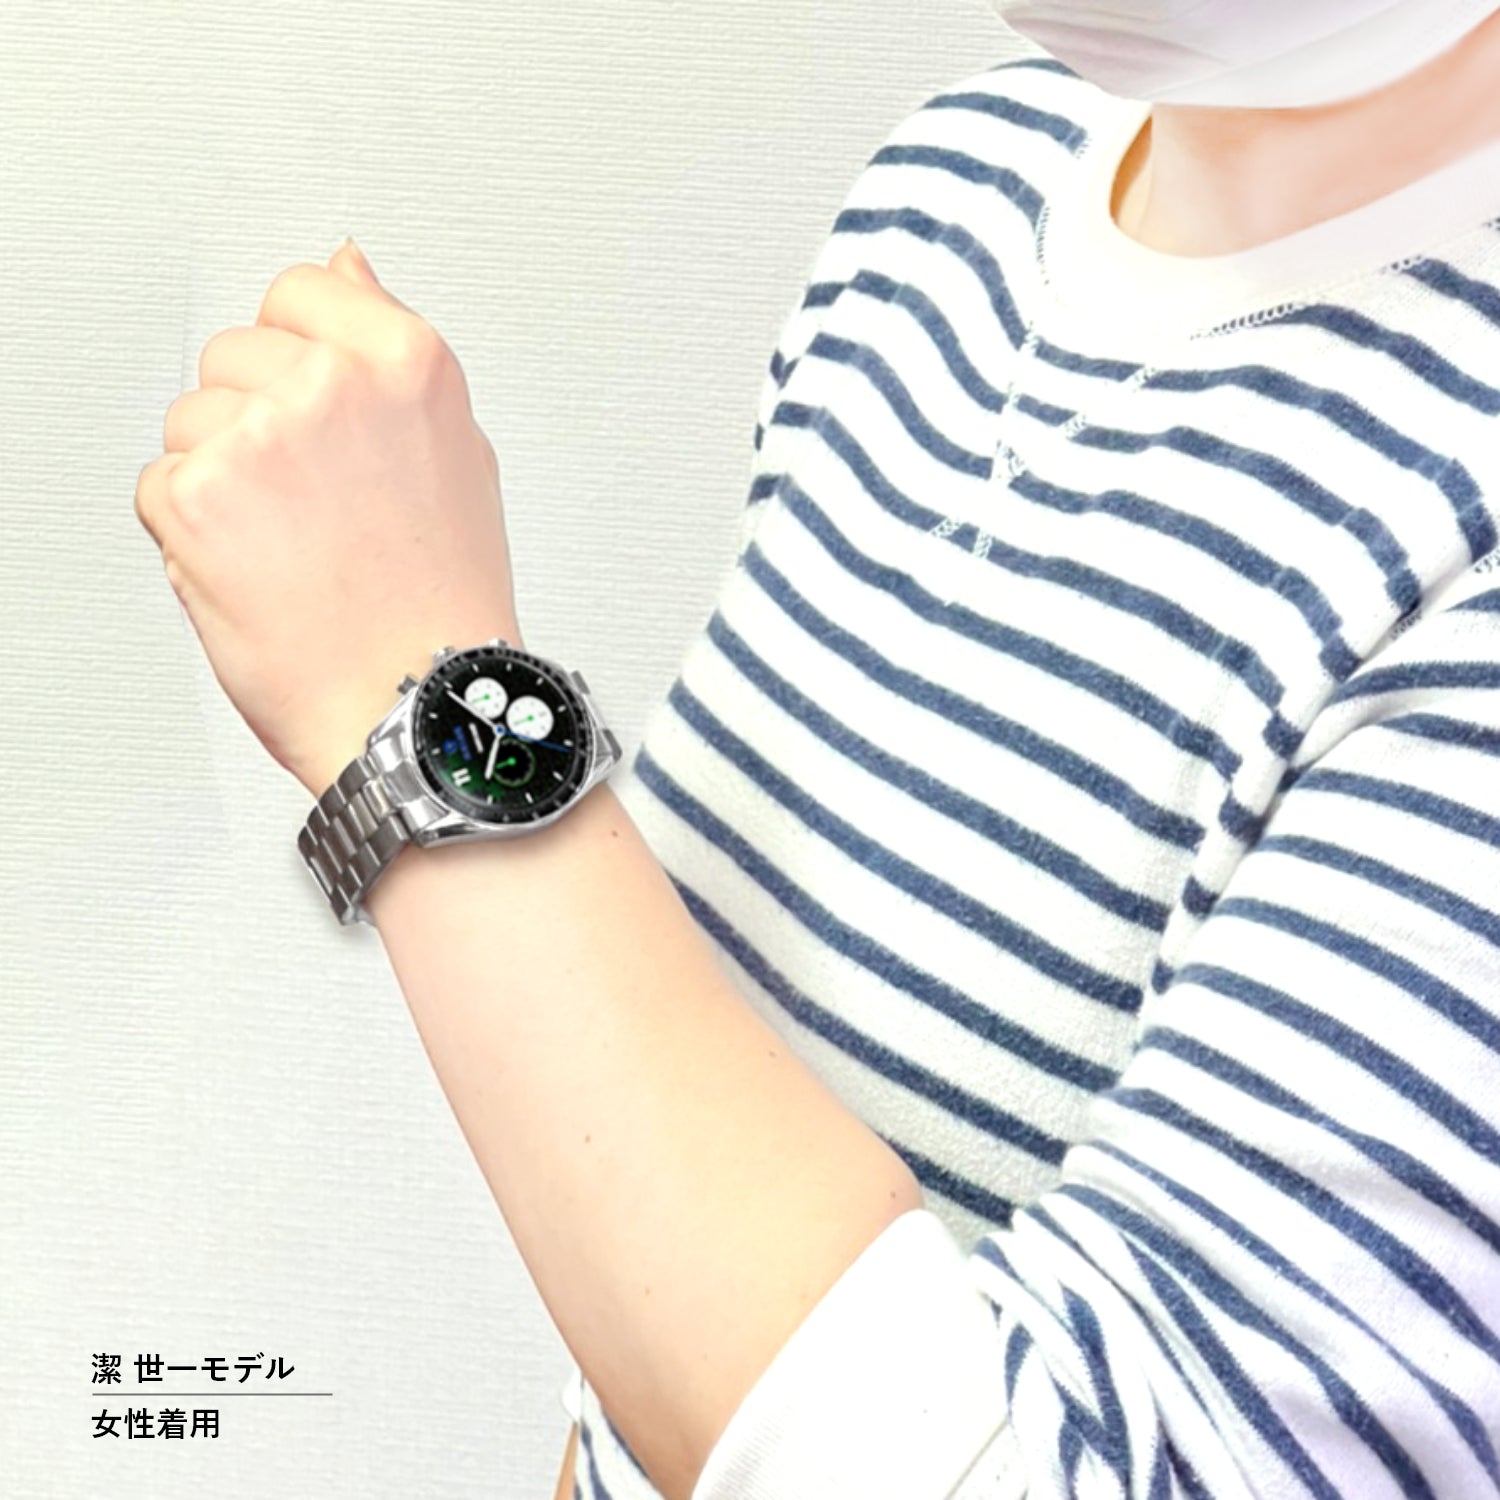 テレビアニメ「ブルーロック」オフィシャルクロノグラフ腕時計 凪 誠士郎